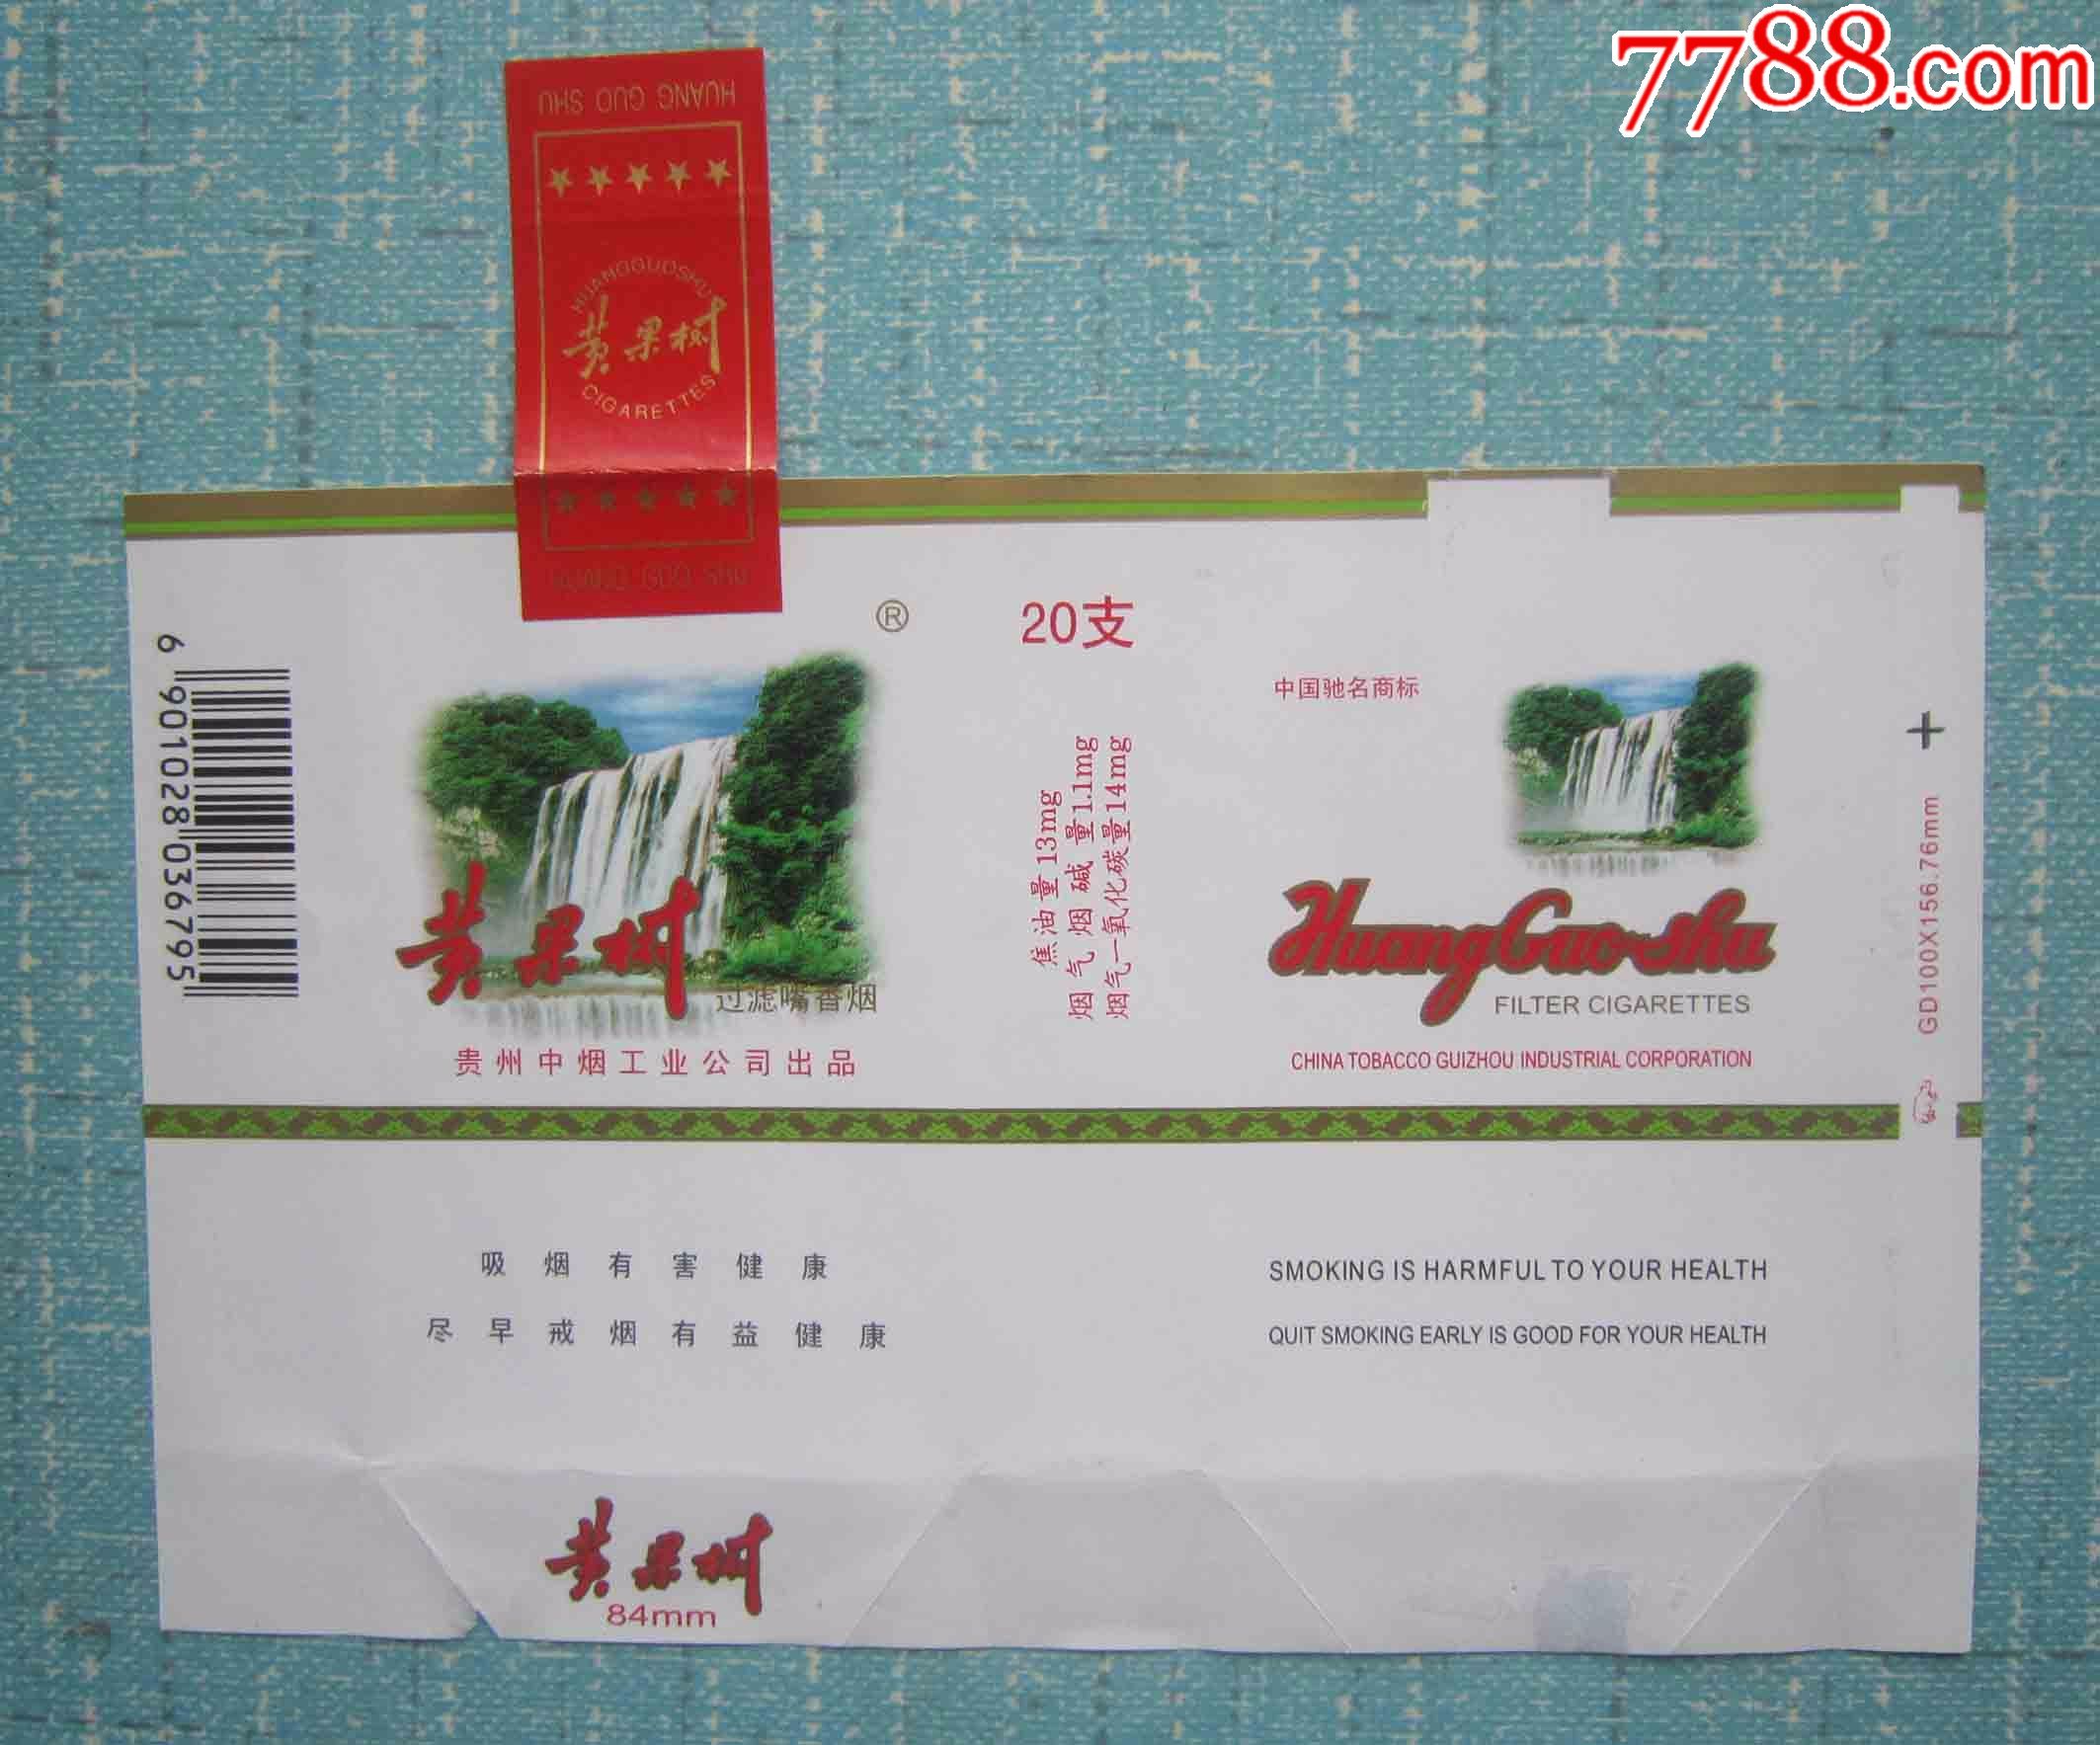 贵州全封标——9 品种: 烟标/烟盒